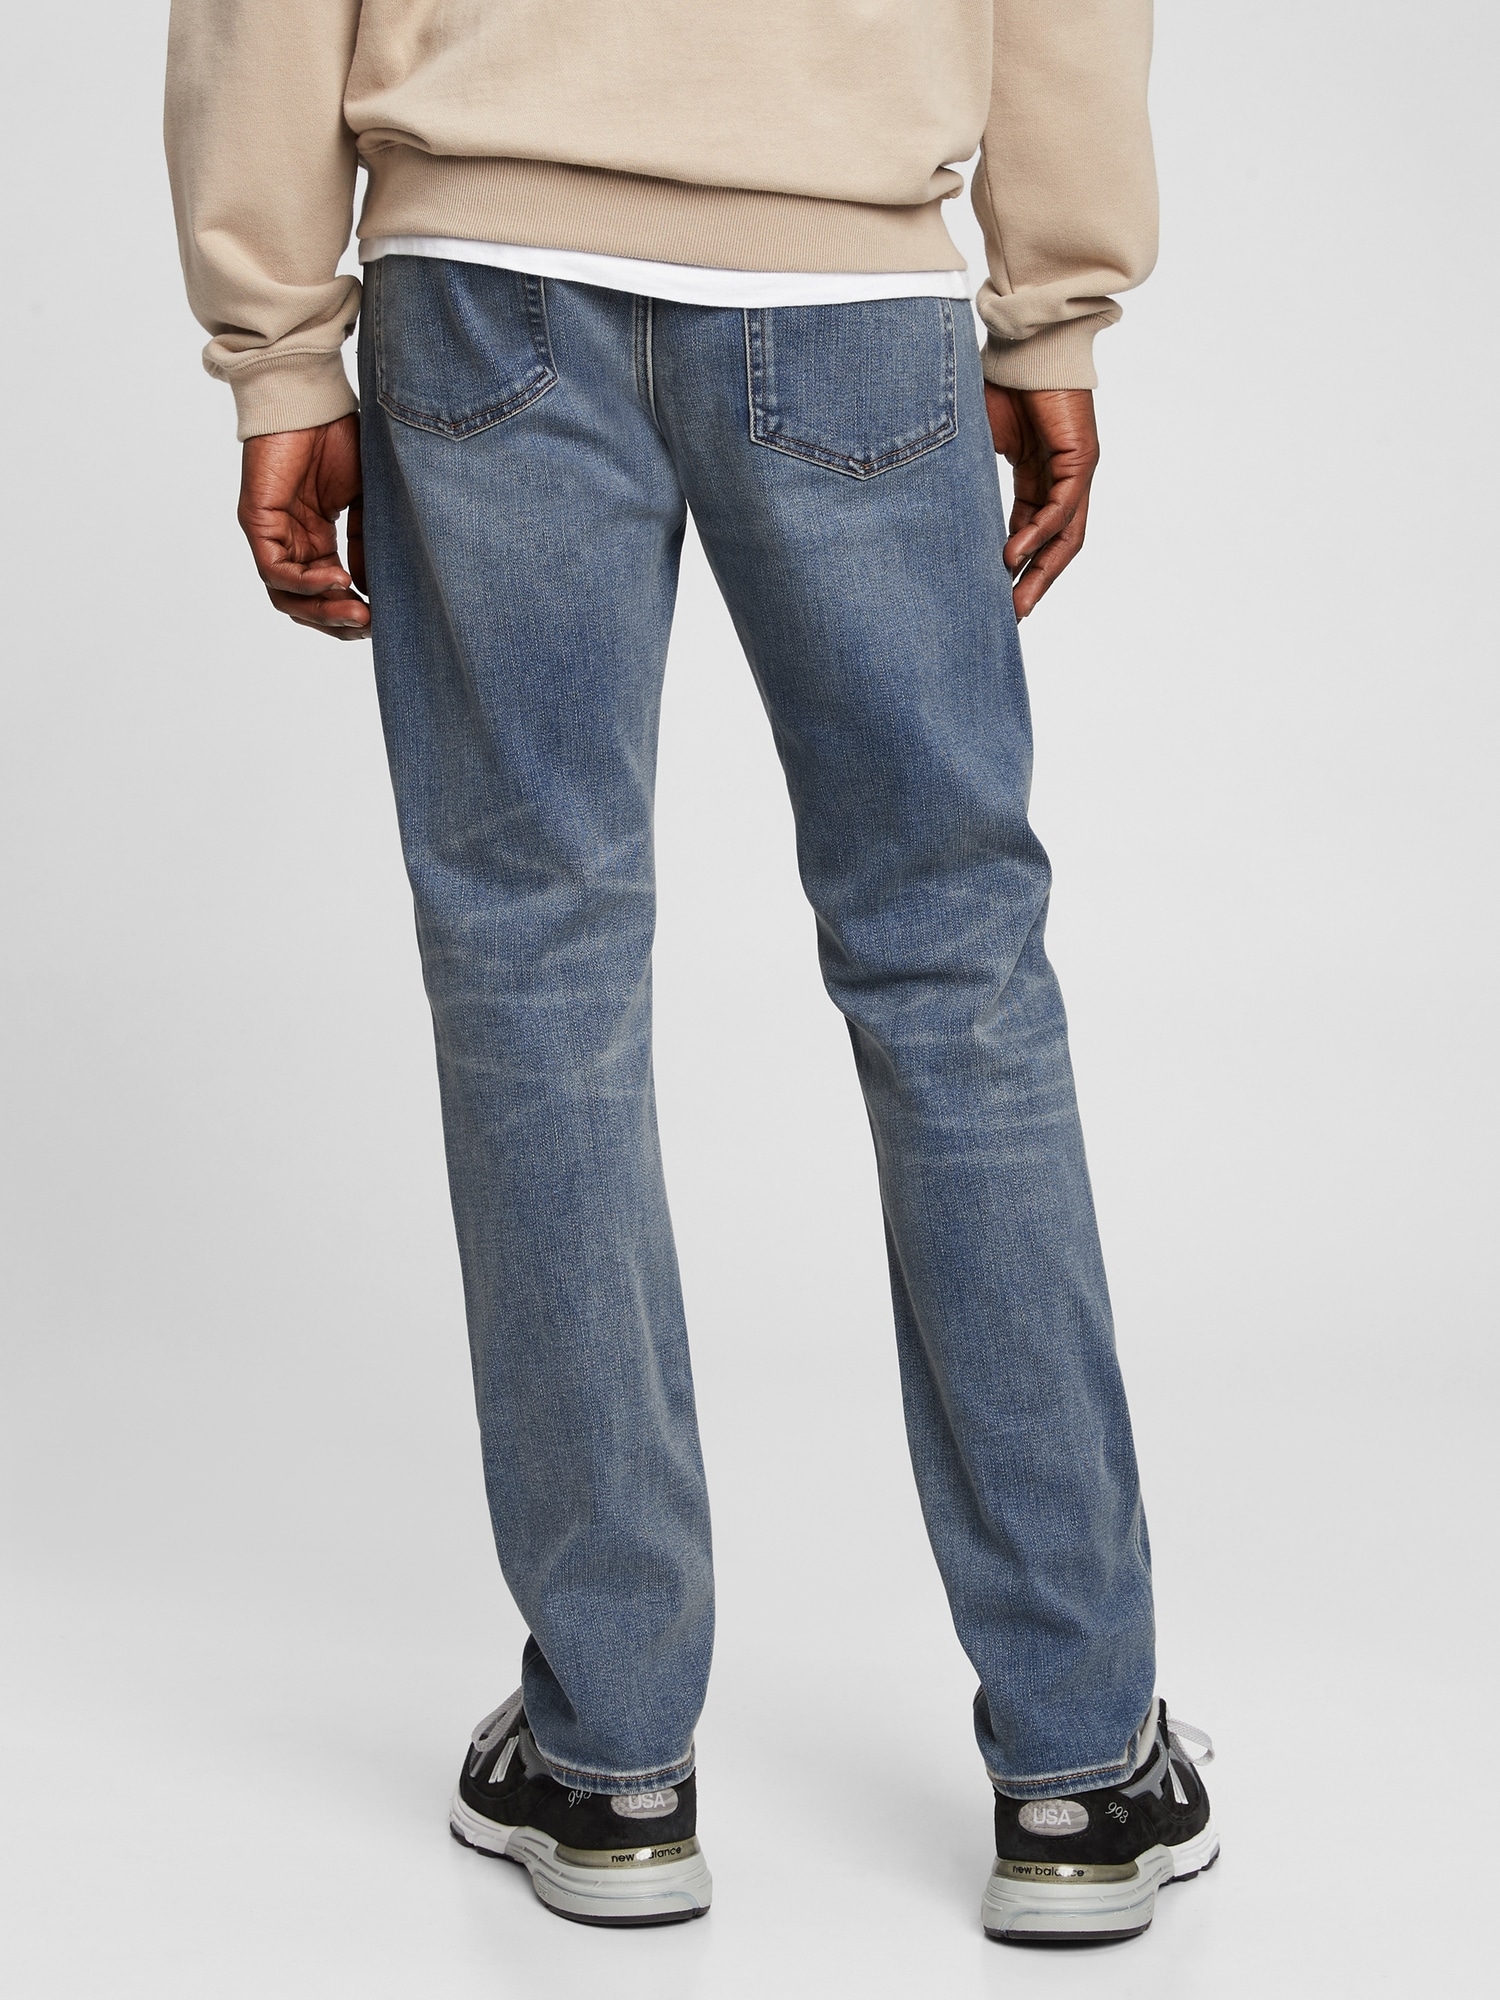 Soft Wear Slim Jeans with Washwell | Gap